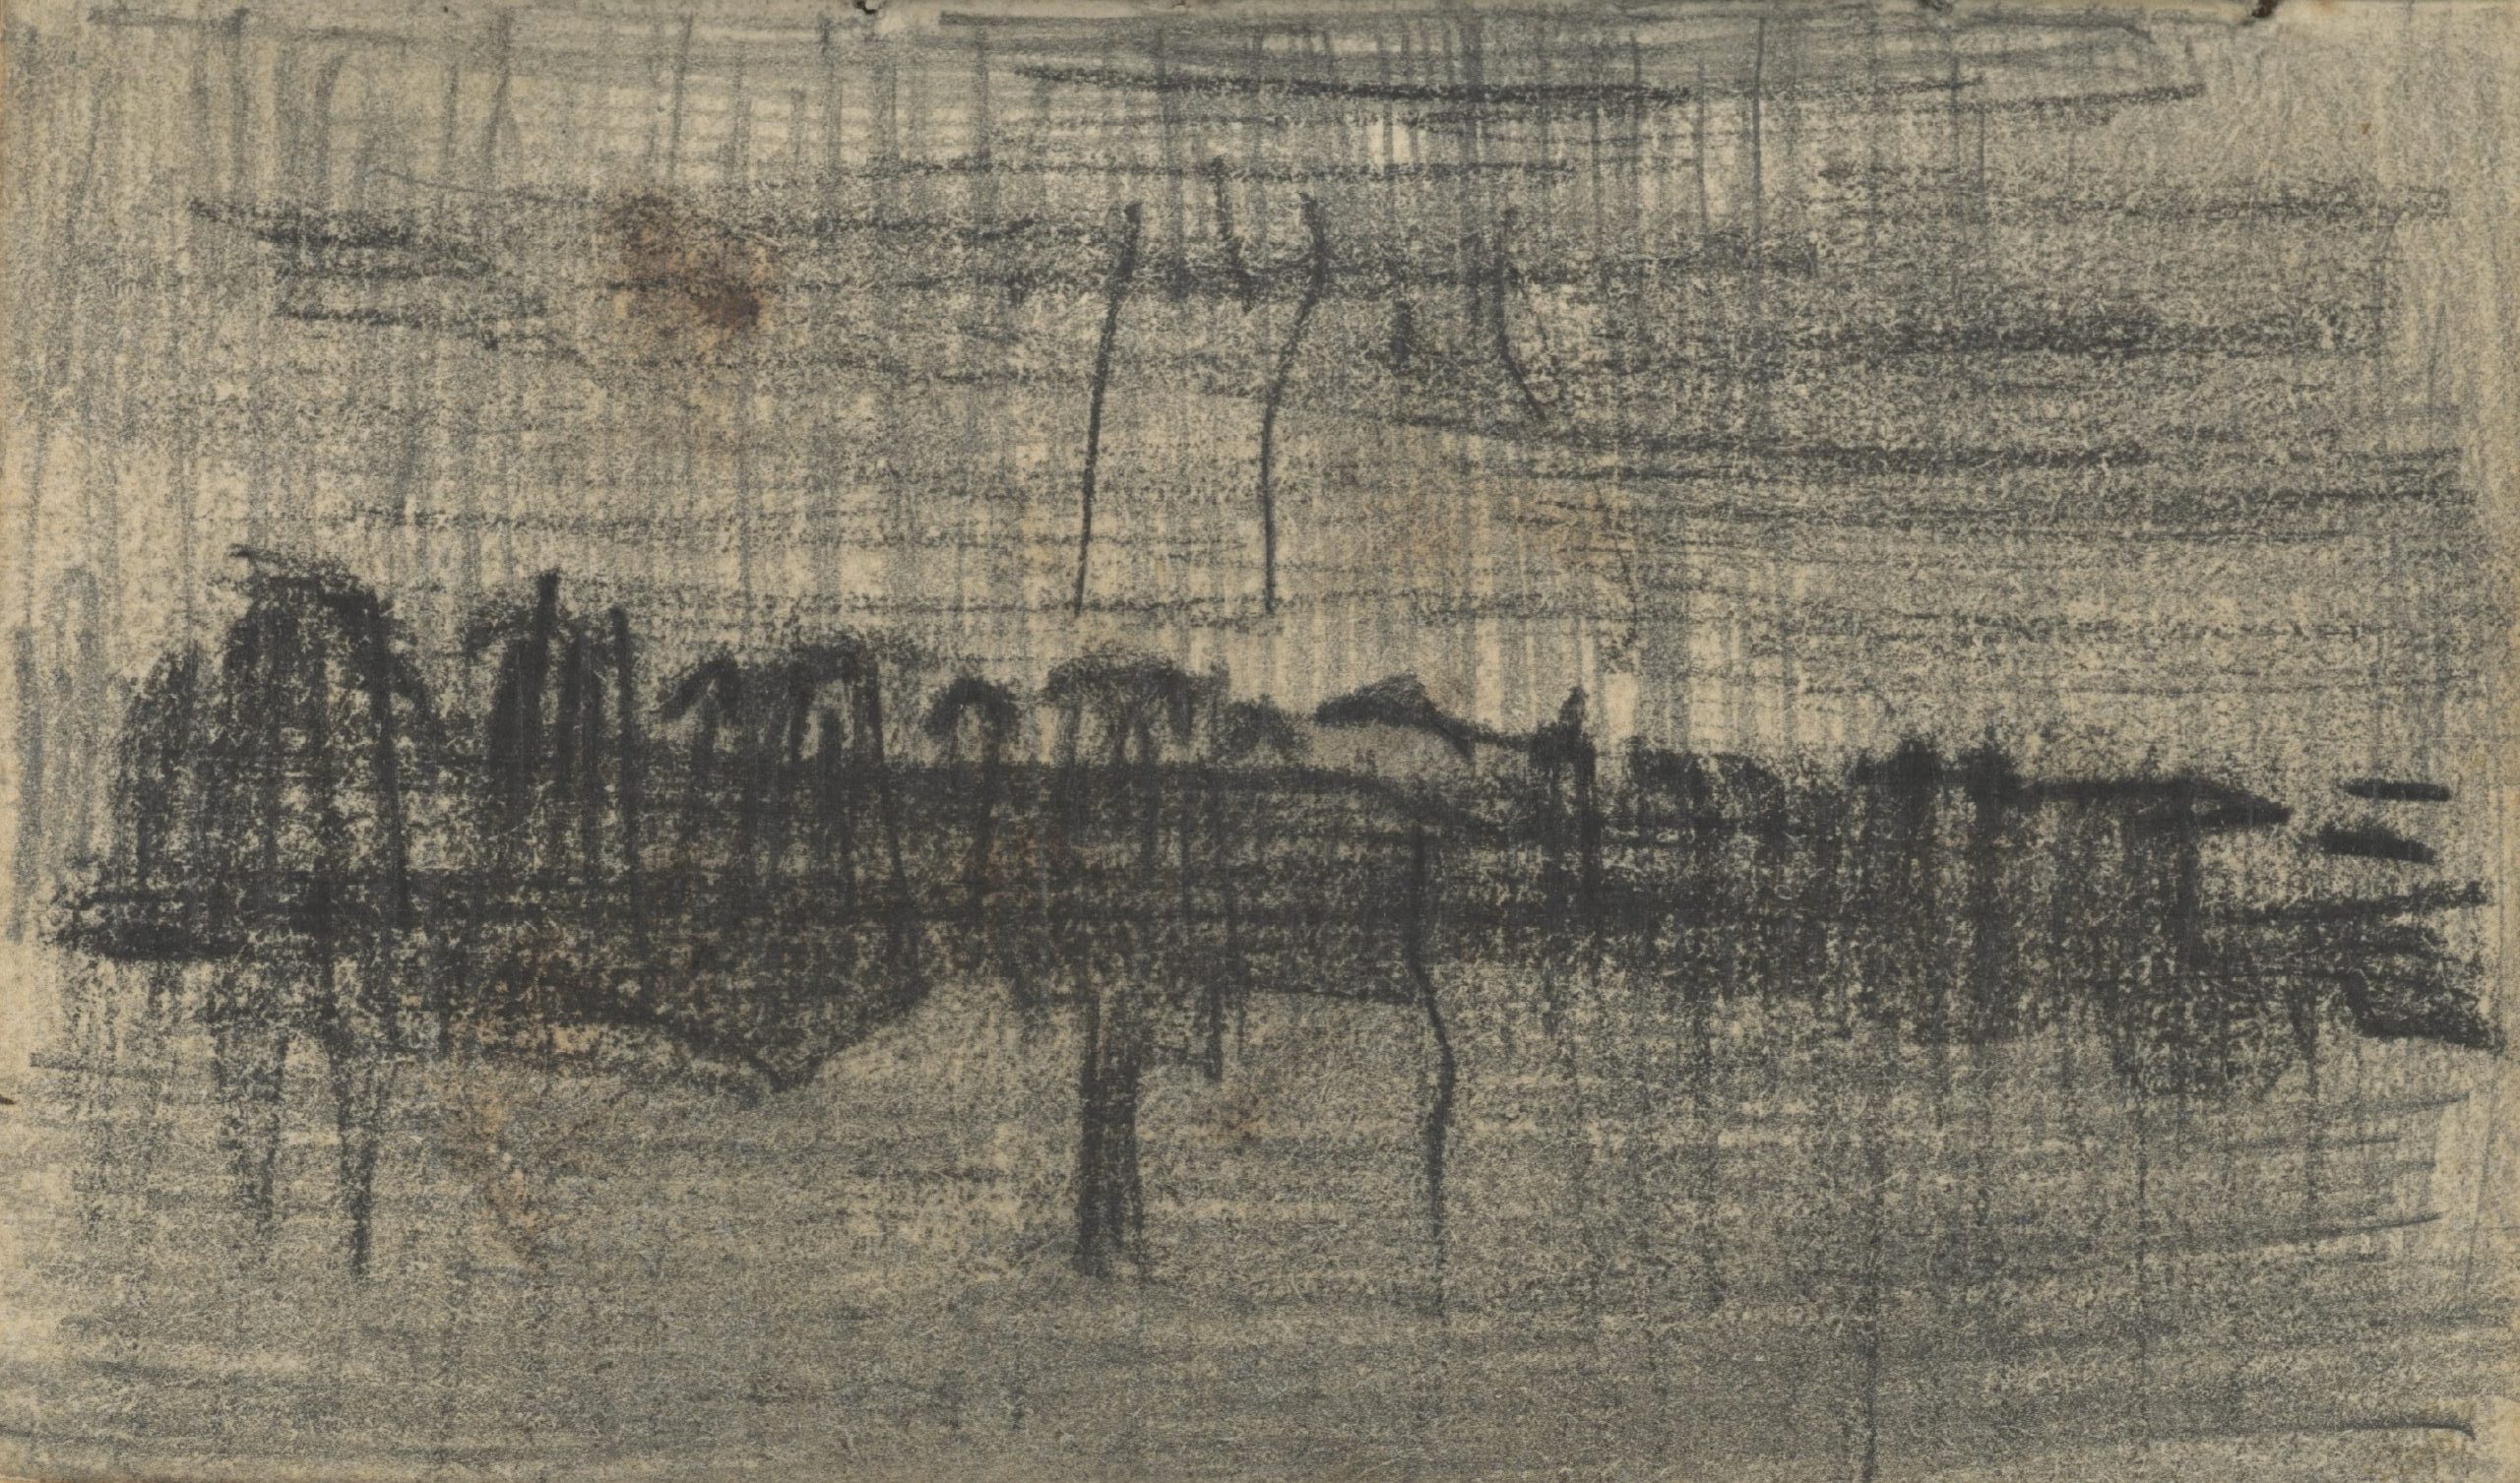 Gezicht op Eindhoven Vincent van Gogh (1853 - 1890), Nuenen, november 1884-september 1885